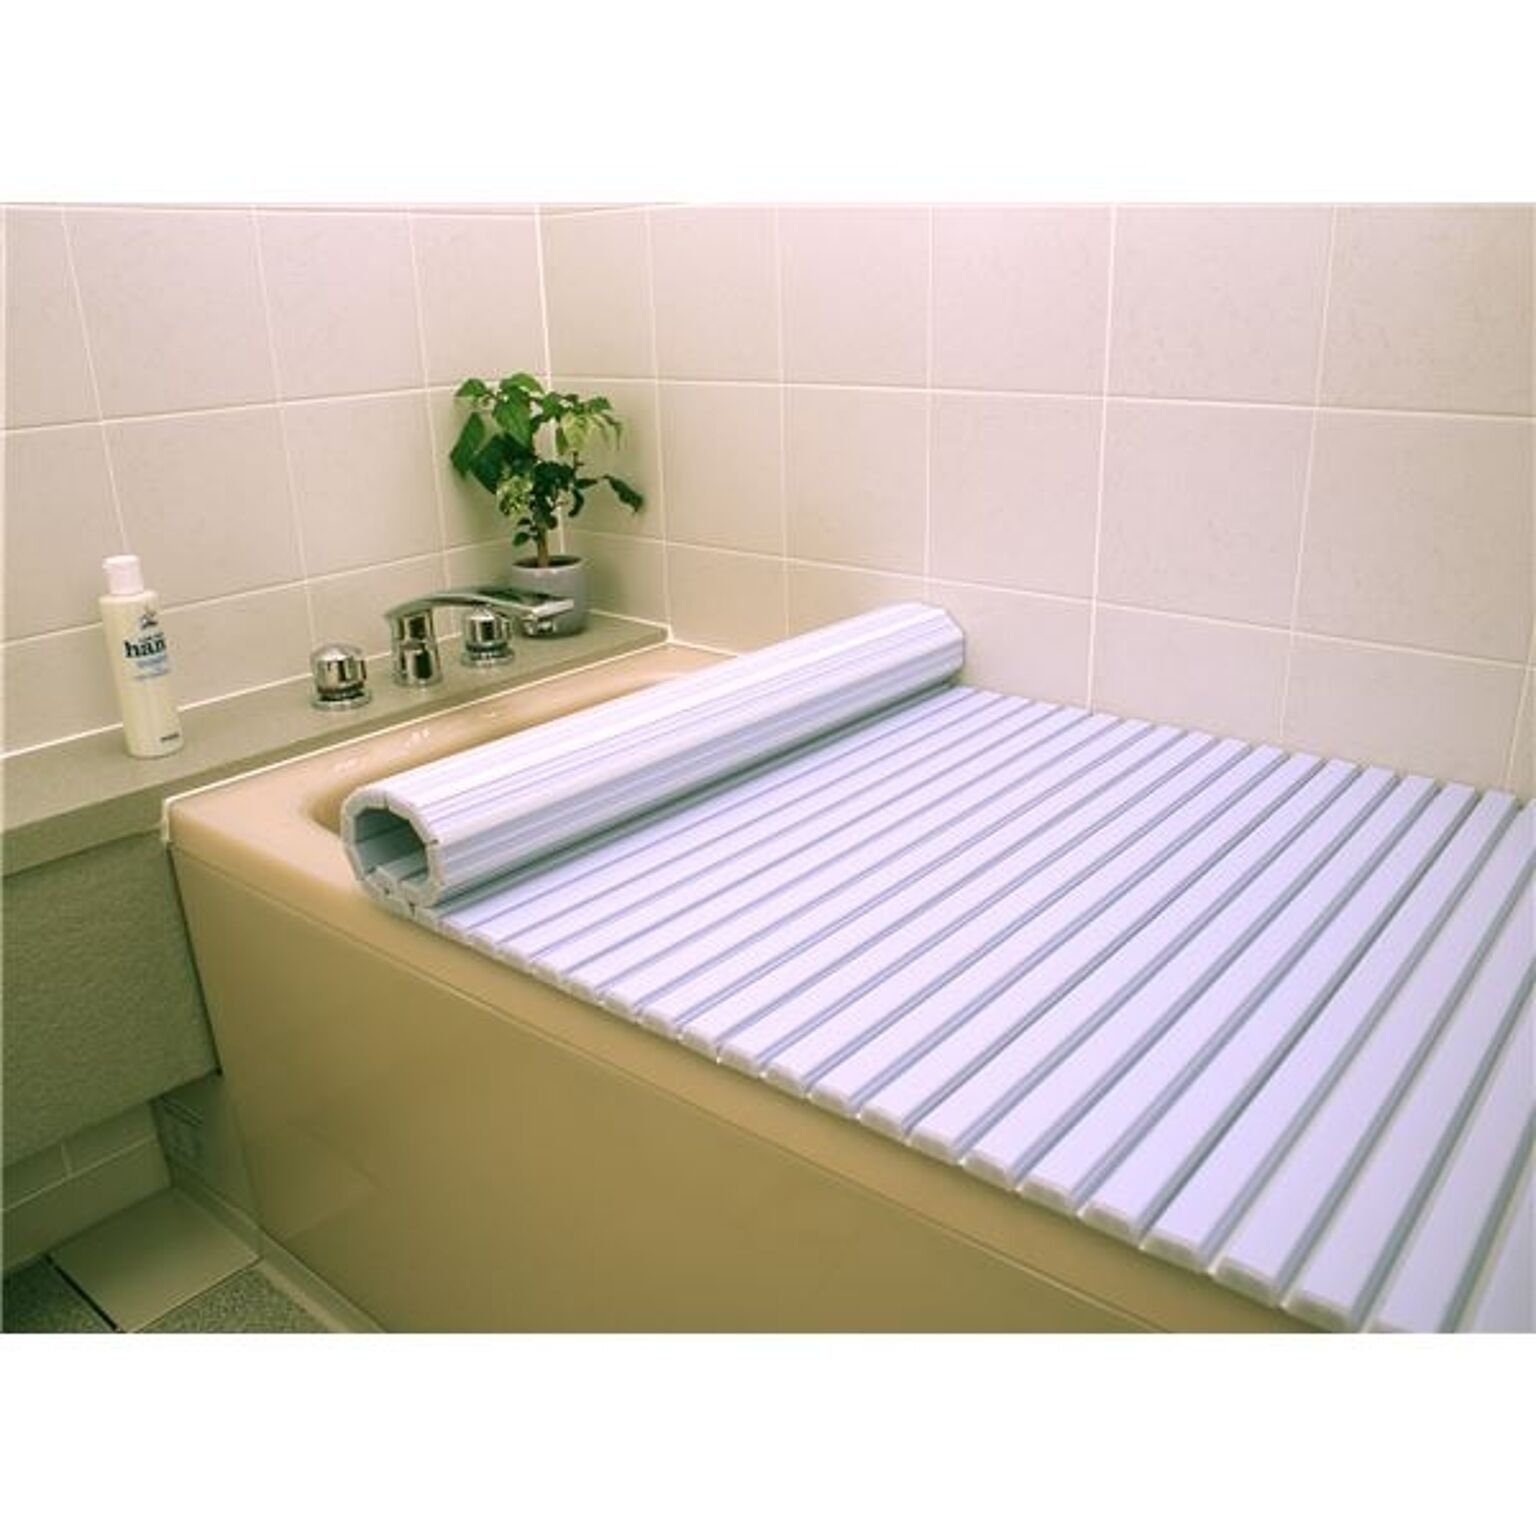 〔6個セット〕 風呂ふた 風呂フタ 70cm×120cm用 ブルー 軽量 シャッター式 巻きフタ SGマーク認定 日本製 浴室 風呂